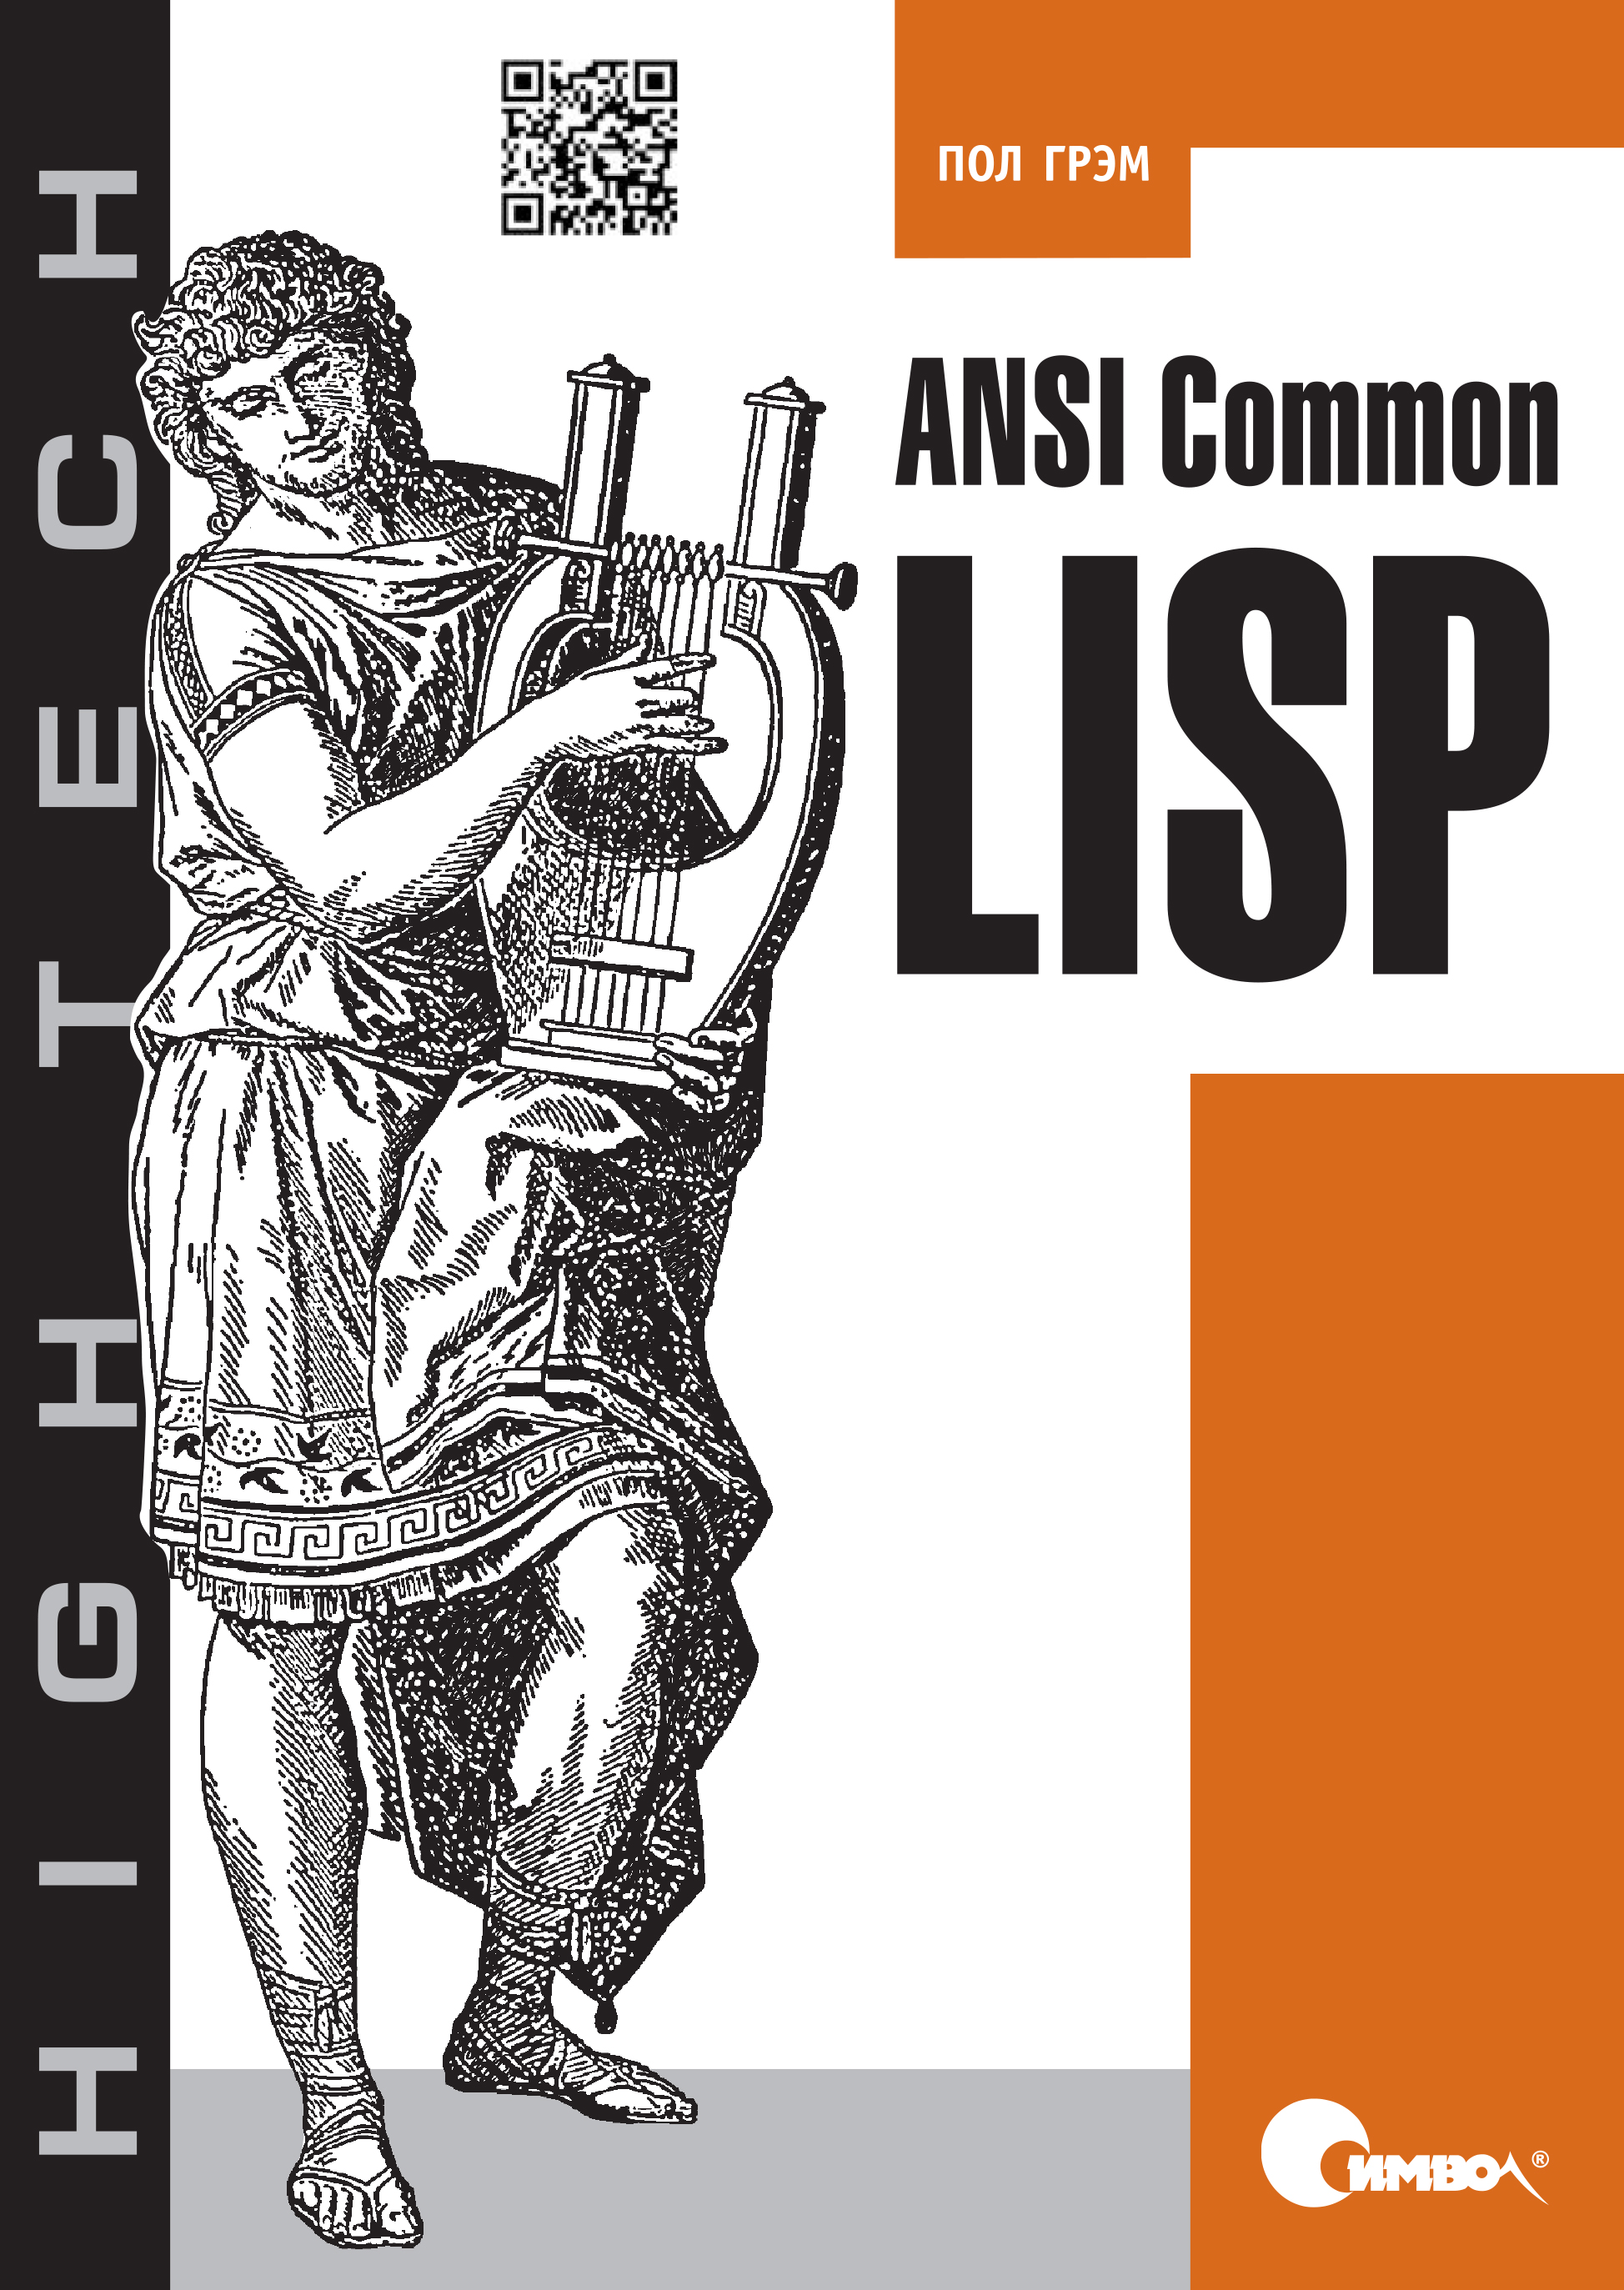 Книга High Tech ANSI Common Lisp созданная Пол Грэм, И. Хохлов может относится к жанру зарубежная компьютерная литература, книги о компьютерах, компьютерная справочная литература, программы. Стоимость электронной книги ANSI Common Lisp с идентификатором 24499958 составляет 390.00 руб.